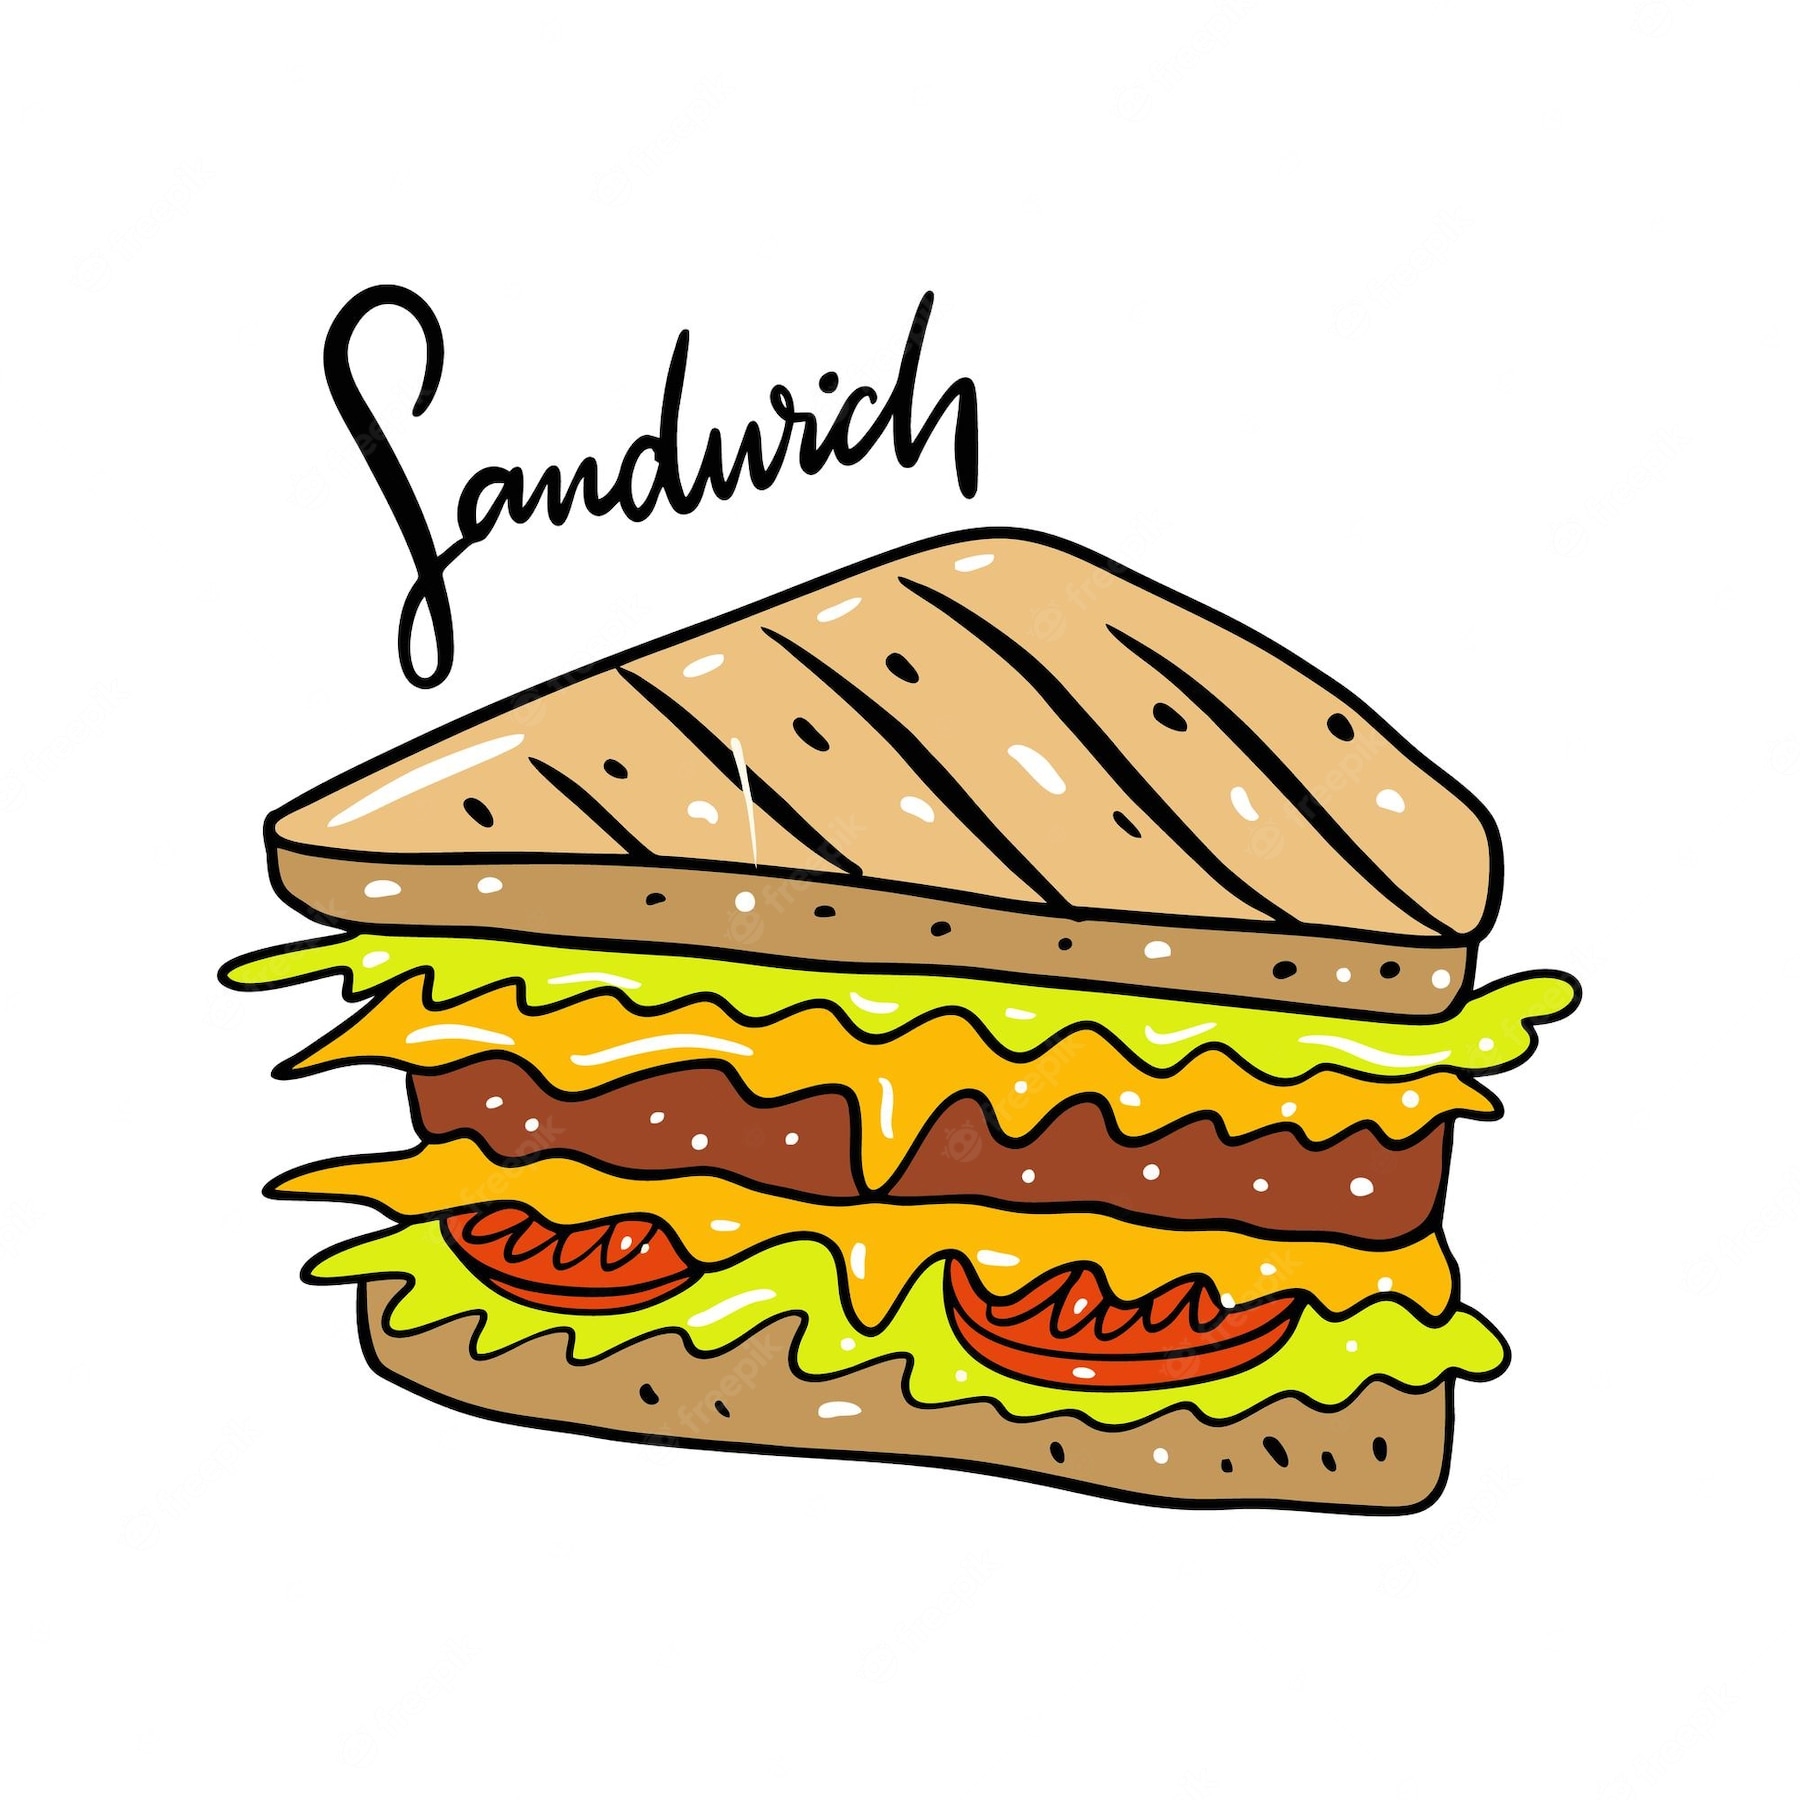 Раскраска сэндвичей: векторные изображения и иллюстрации, которые можно скачать бесплатно | Freepik